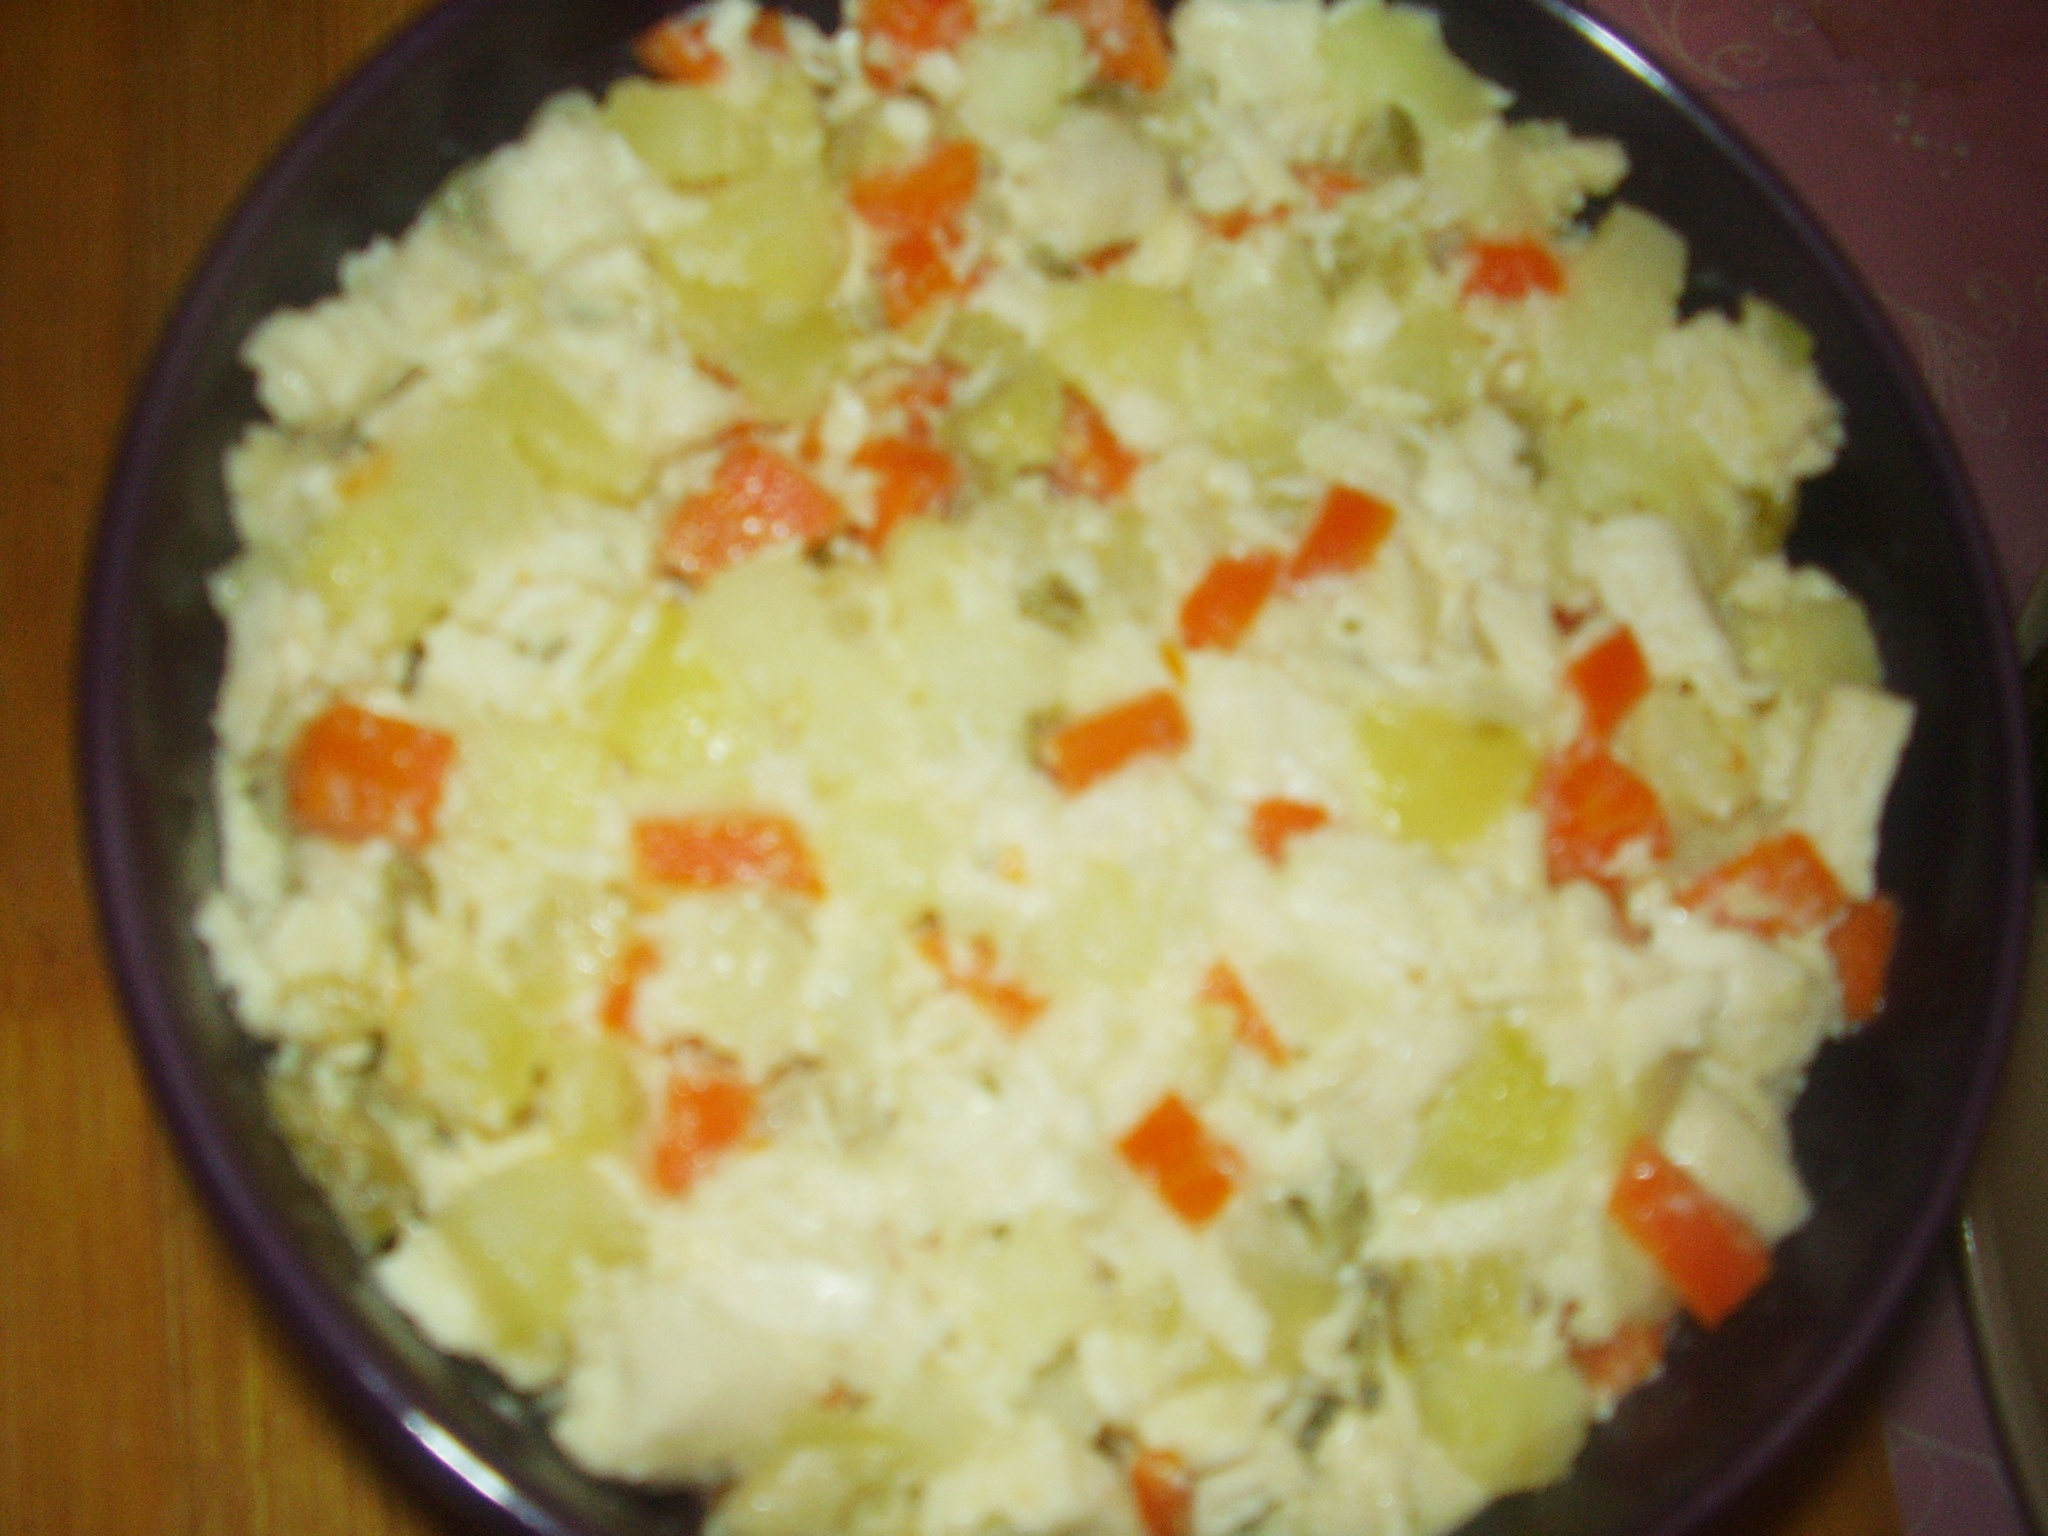 Salata de piept de pui cu cartofi